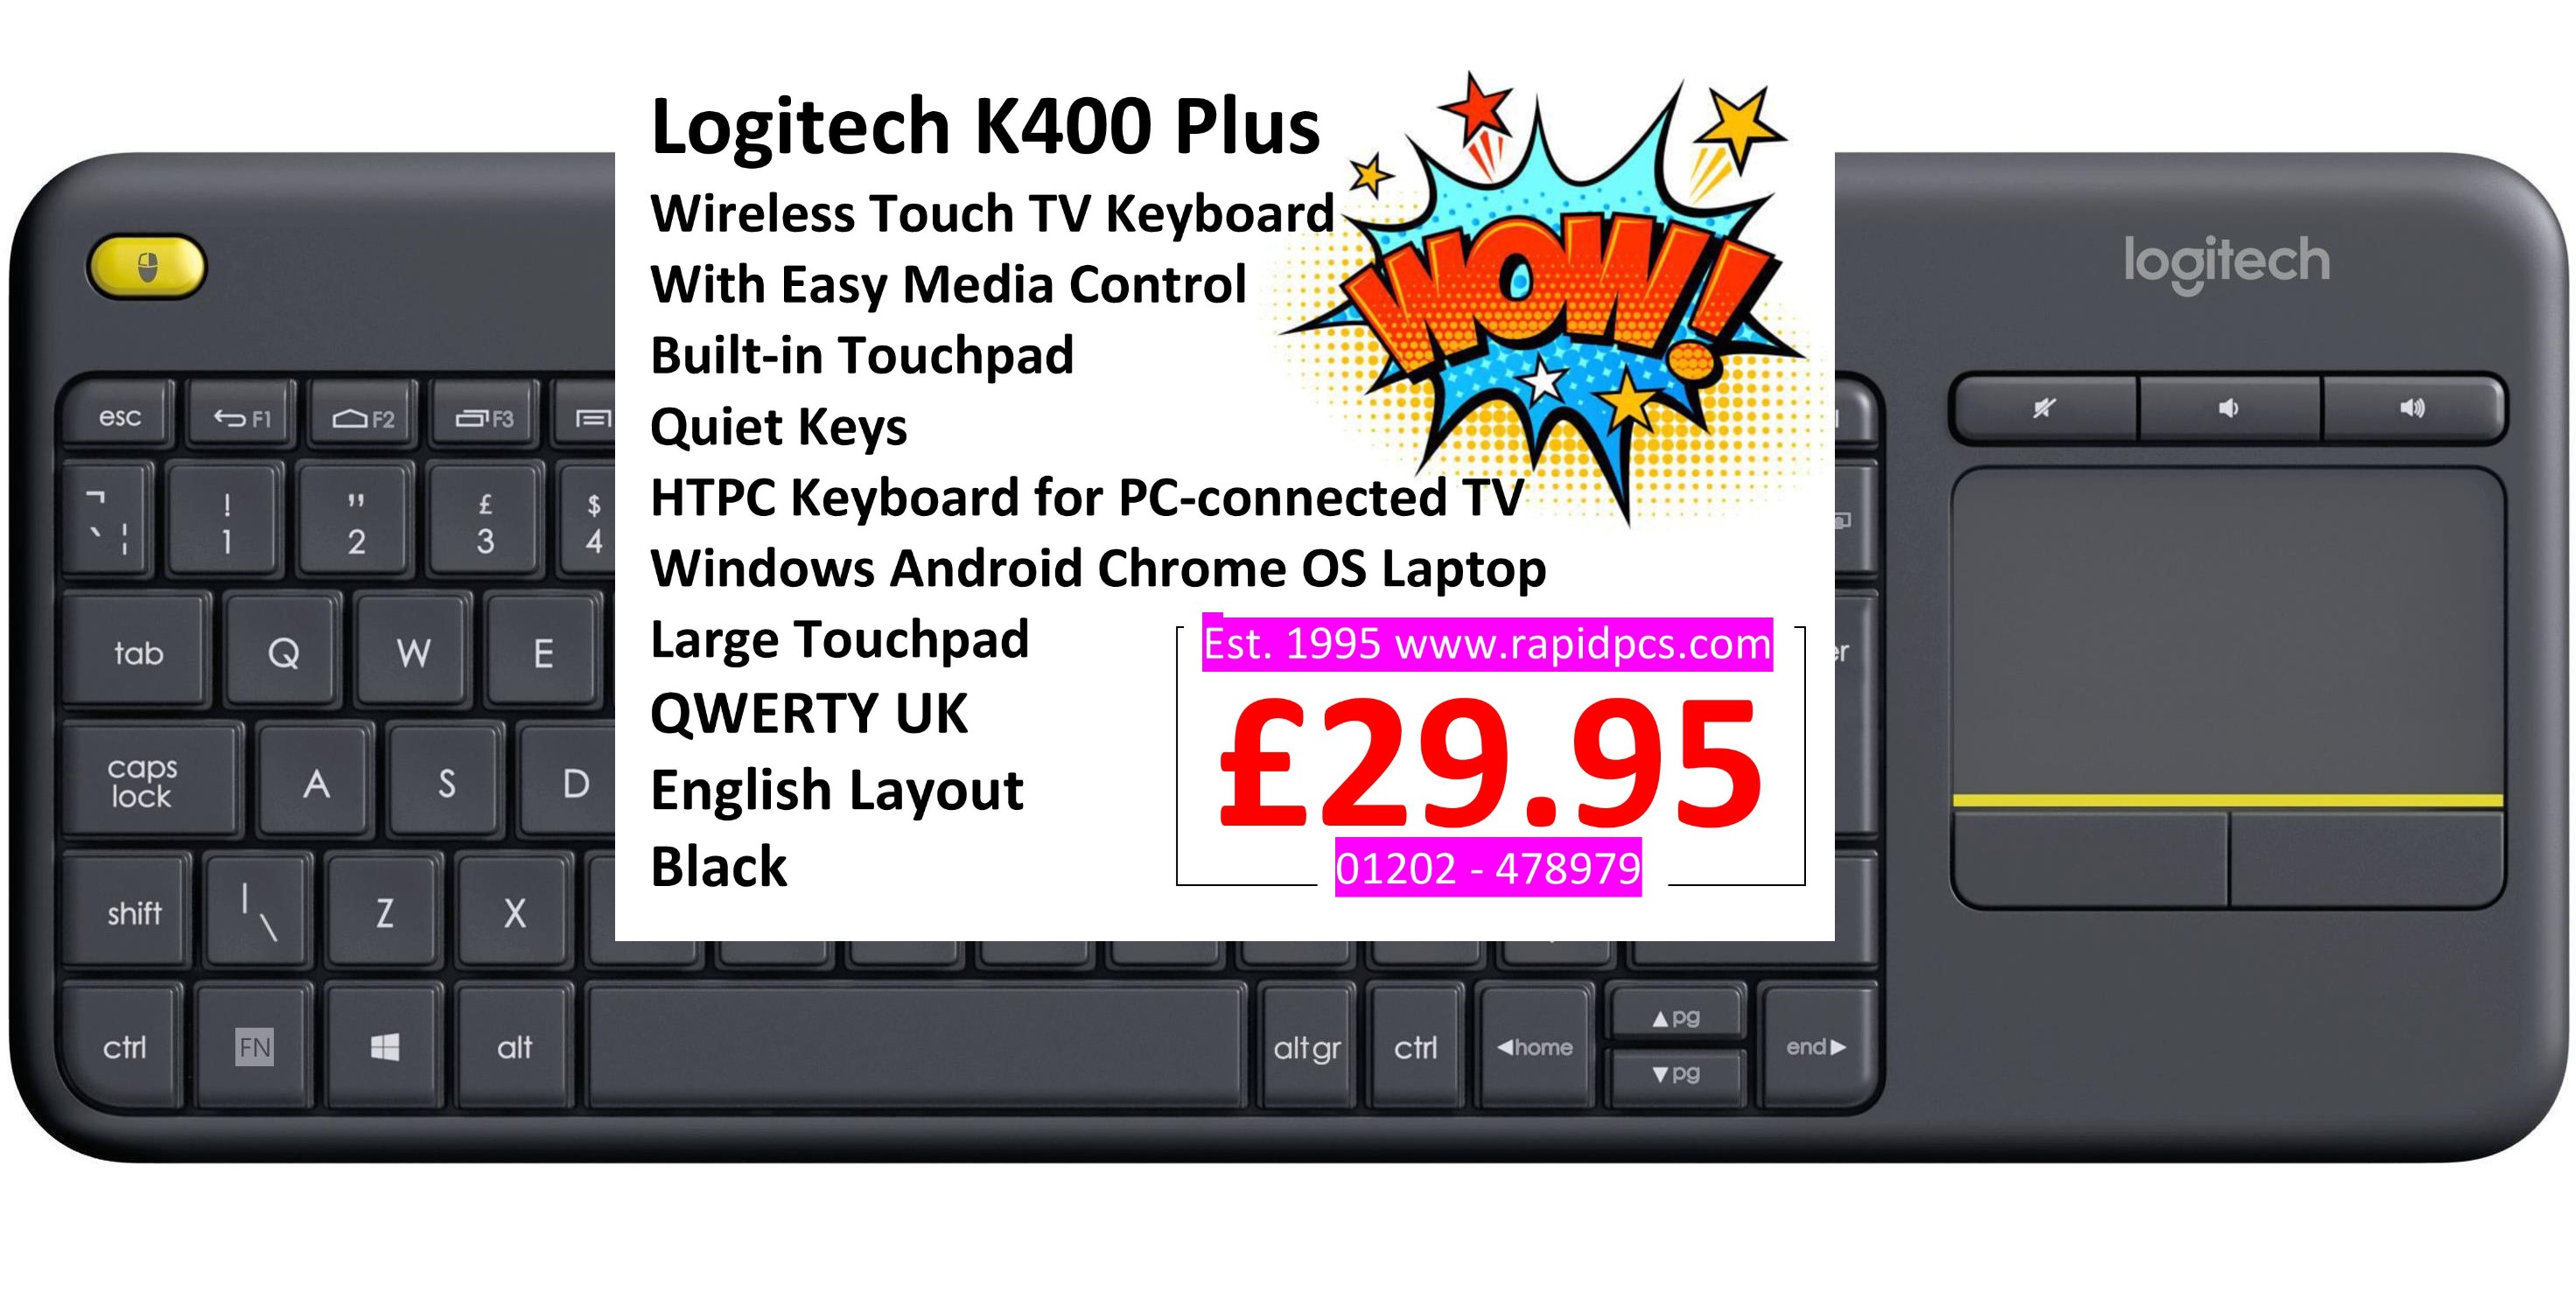 logitech wireless keyboard k400